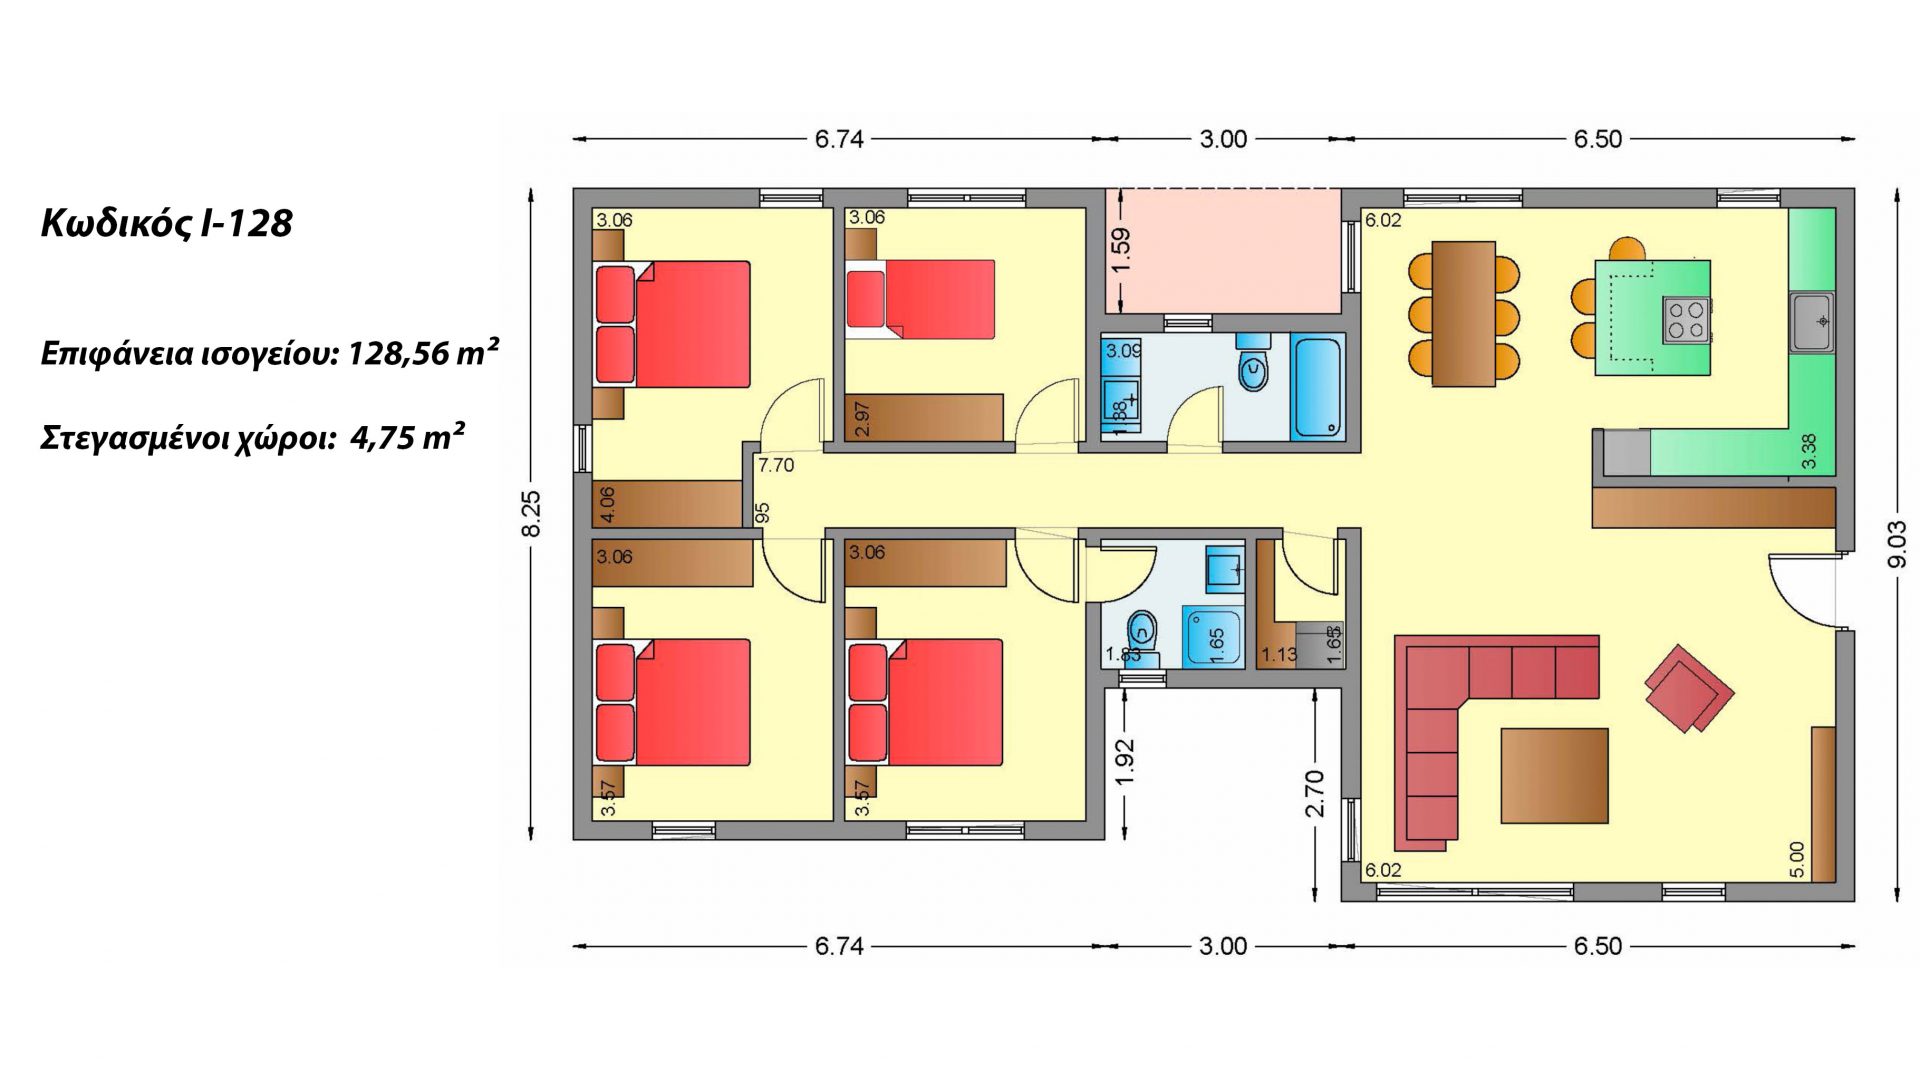 Ισόγεια Κατοικία I-128, συνολικής επιφάνειας 128,56 τ.μ., στεγασμένοι χώροι 4,75 τ.μ.